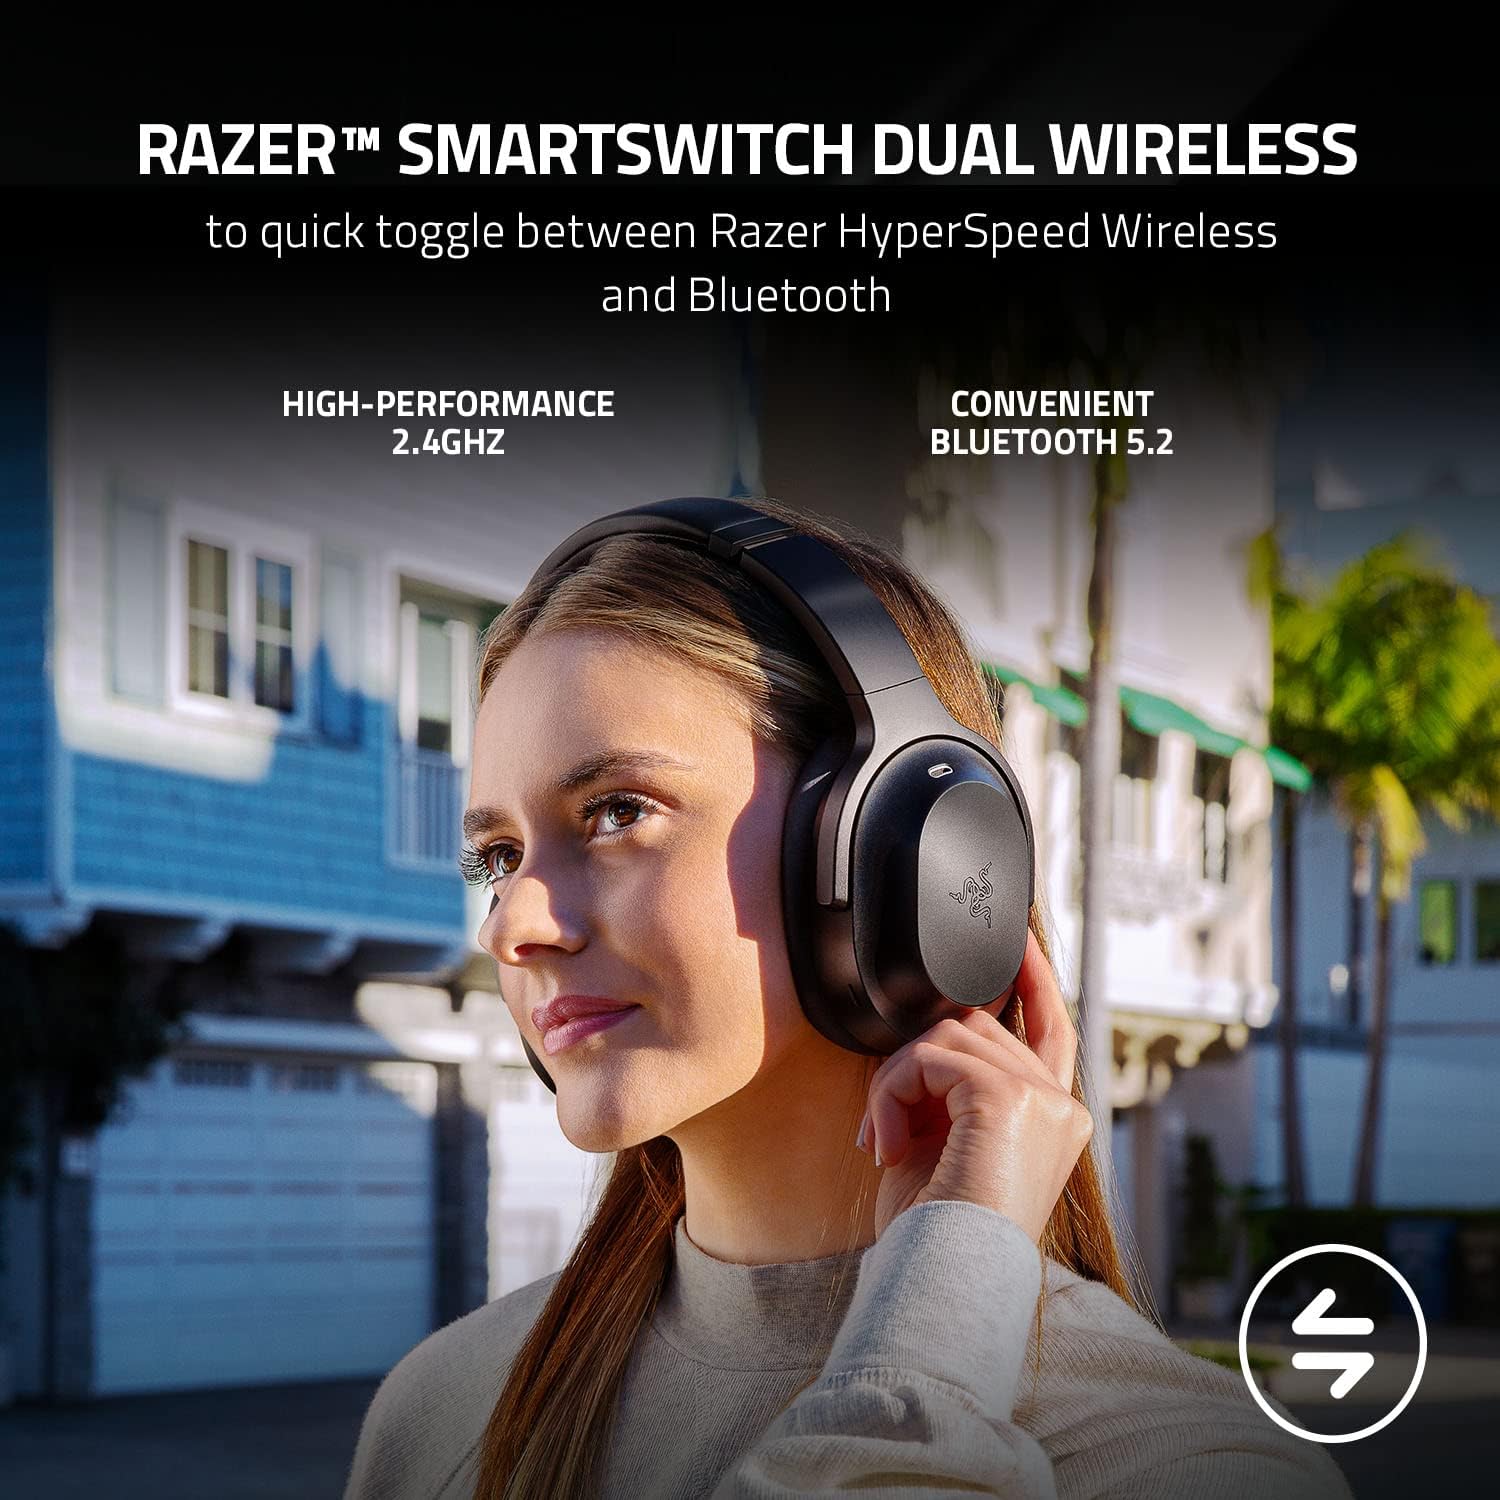 Tai nghe Razer Barracuda Pro-Wireless Gaming Headset with Hybrid ANC_Mới, hàng chính hãng